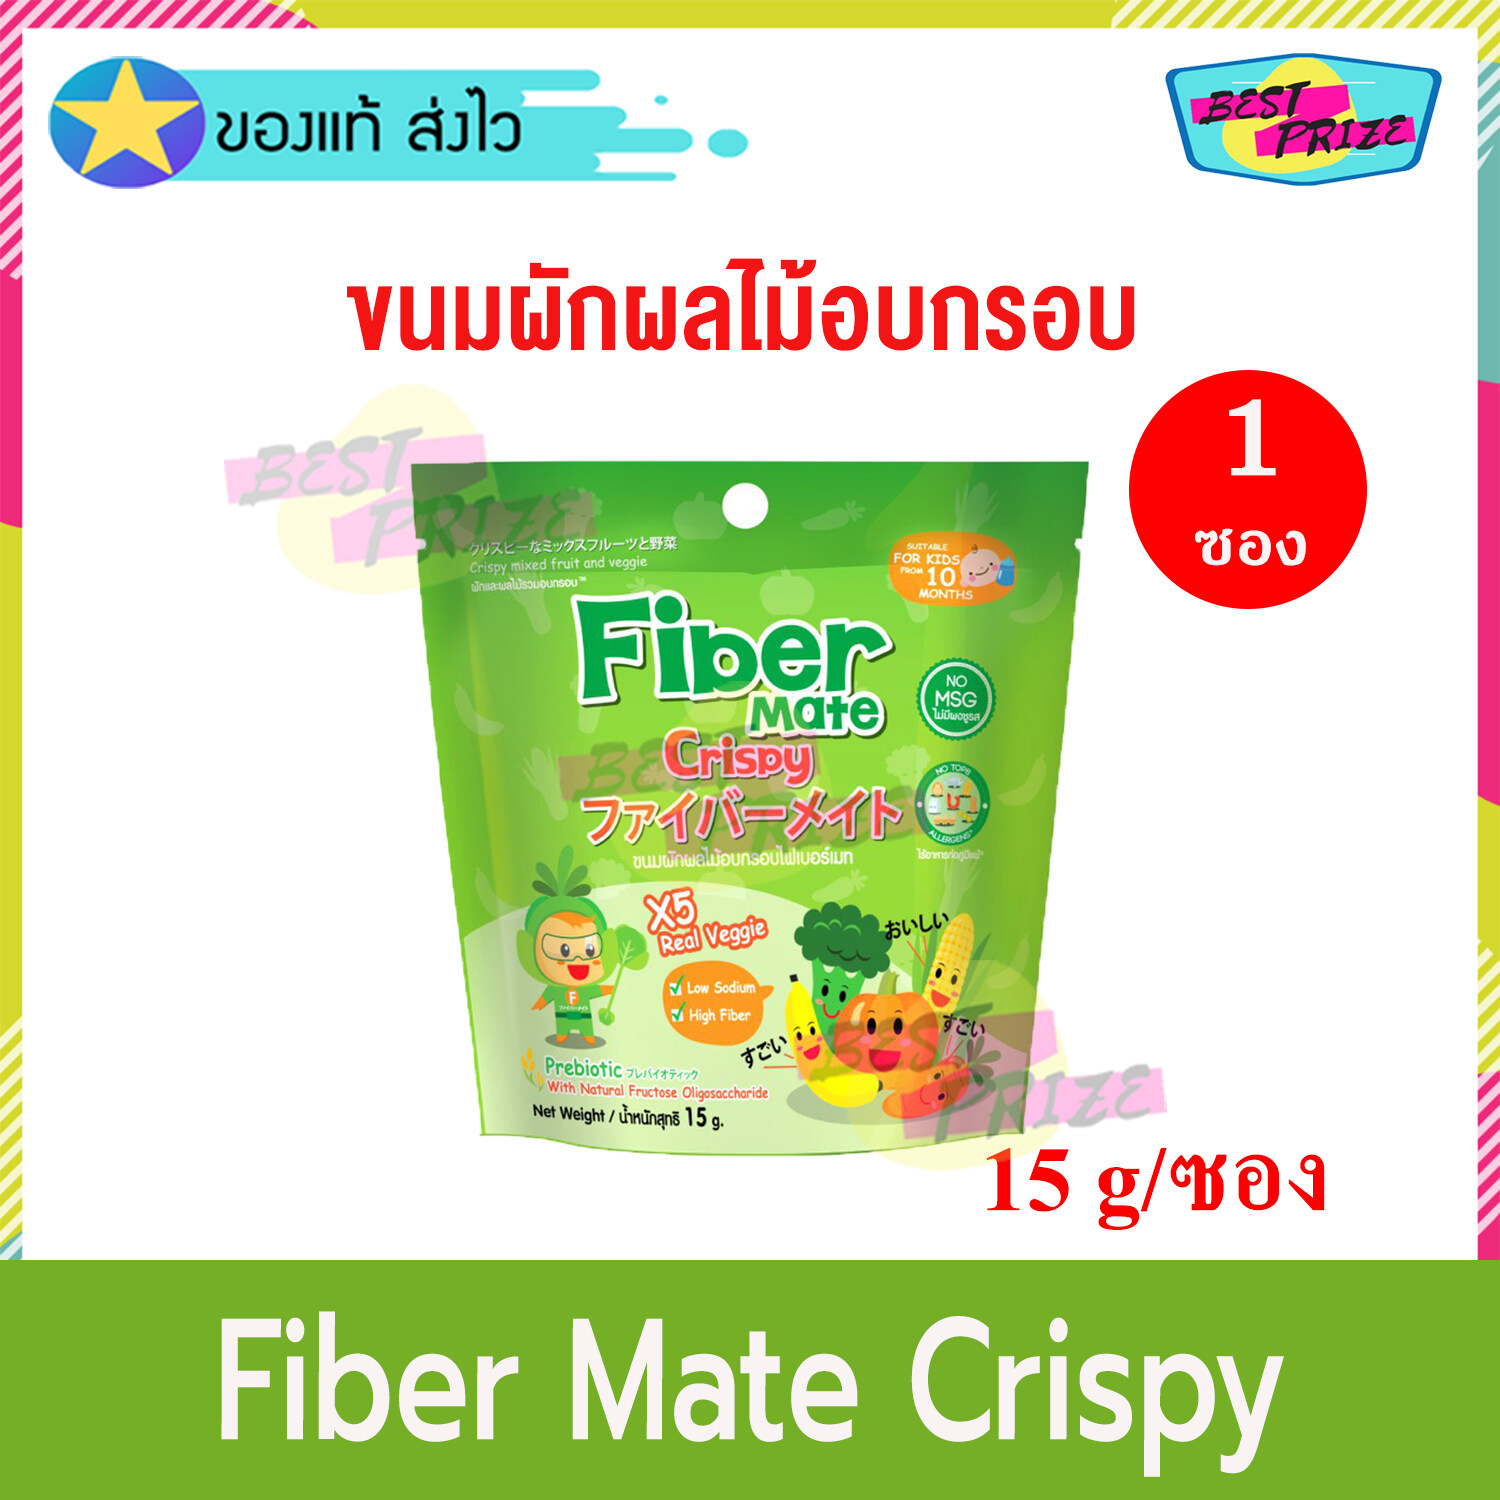 Fiber Mate Crispy 15 g (จำนวน 1 ซอง) ไฟเบอร์เมท คริสปี้ ขนมผักผลไม้อบกรอบ ขนม ผักผลไม้ อบกรอบ อาหารเสริมเด็ก ขนมเด็ก